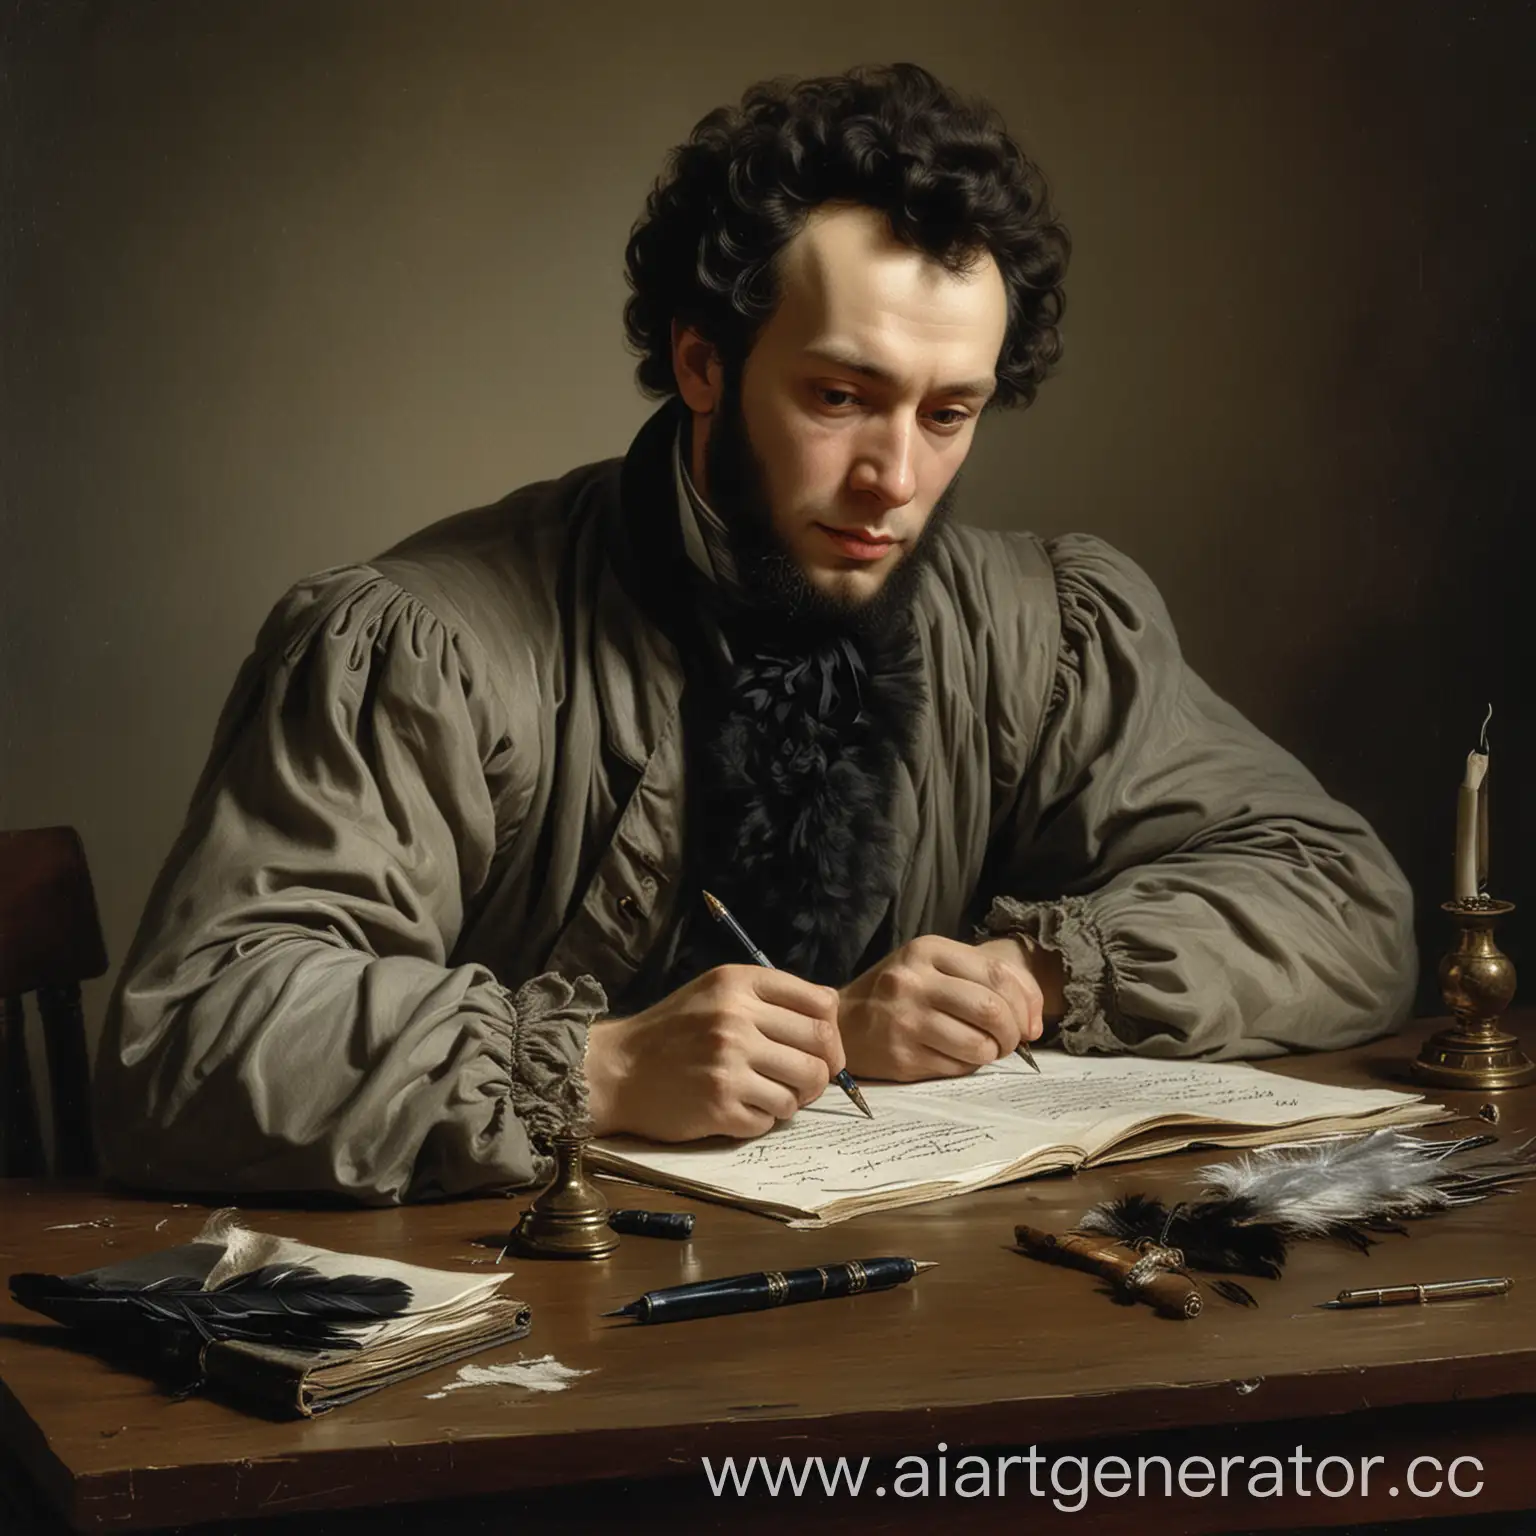 Александр Сергеевич Пушкин за письменным столом пишет пером и чернилами